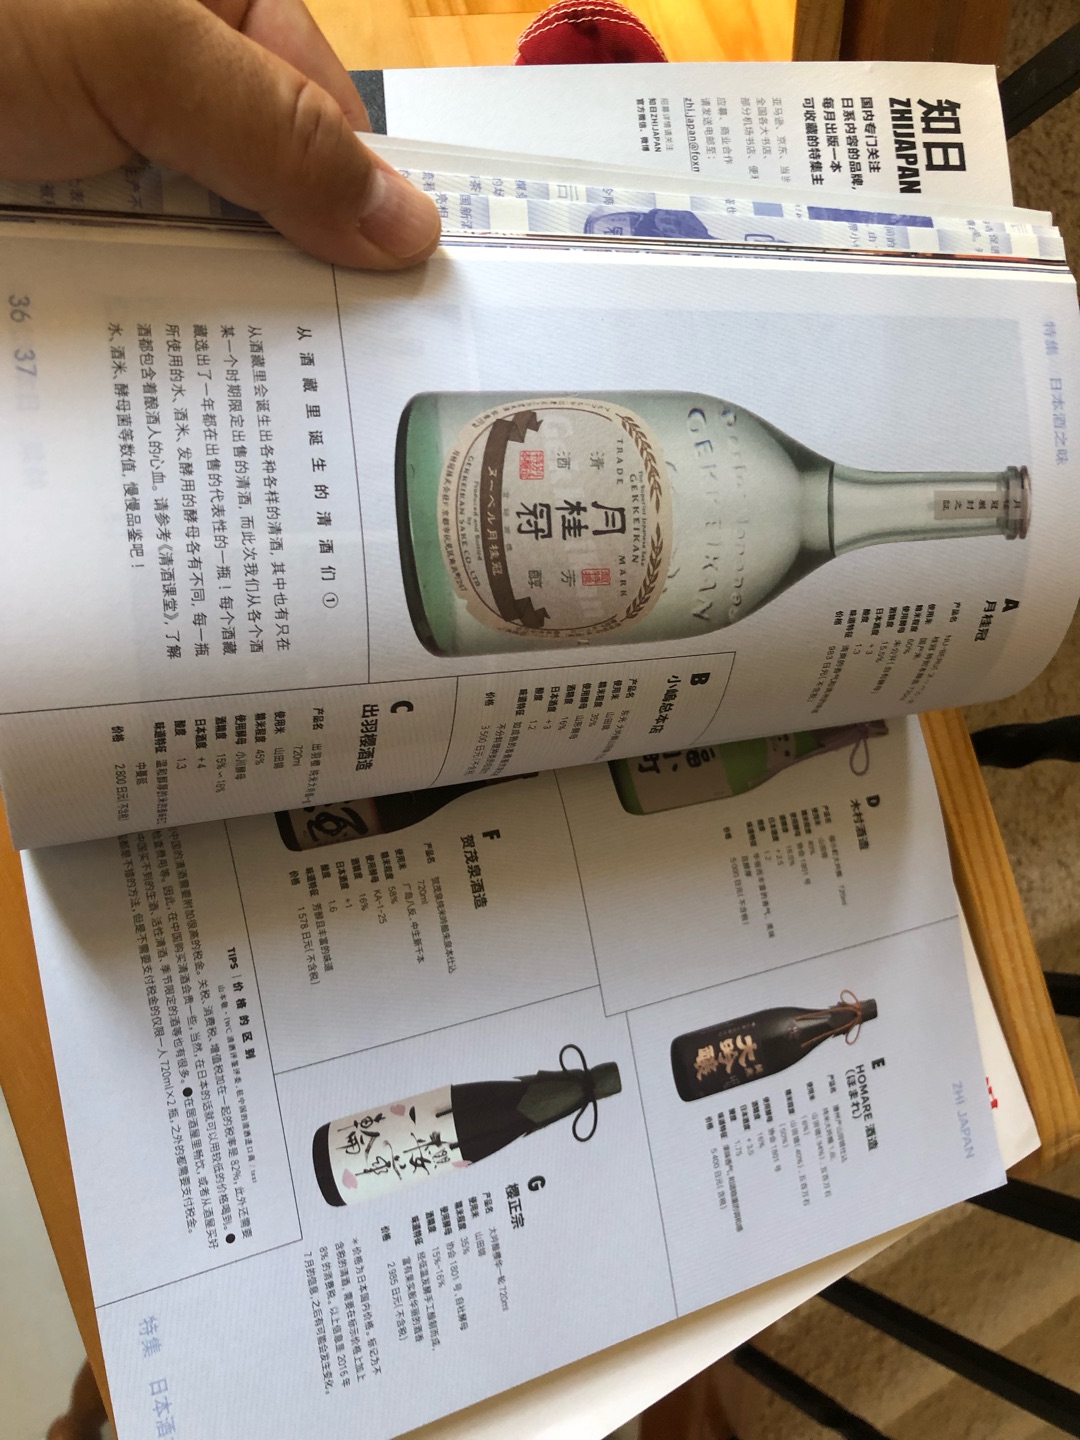 很喜欢喝清酒就买来研究一下。书本介绍的很详细，印刷也不错?